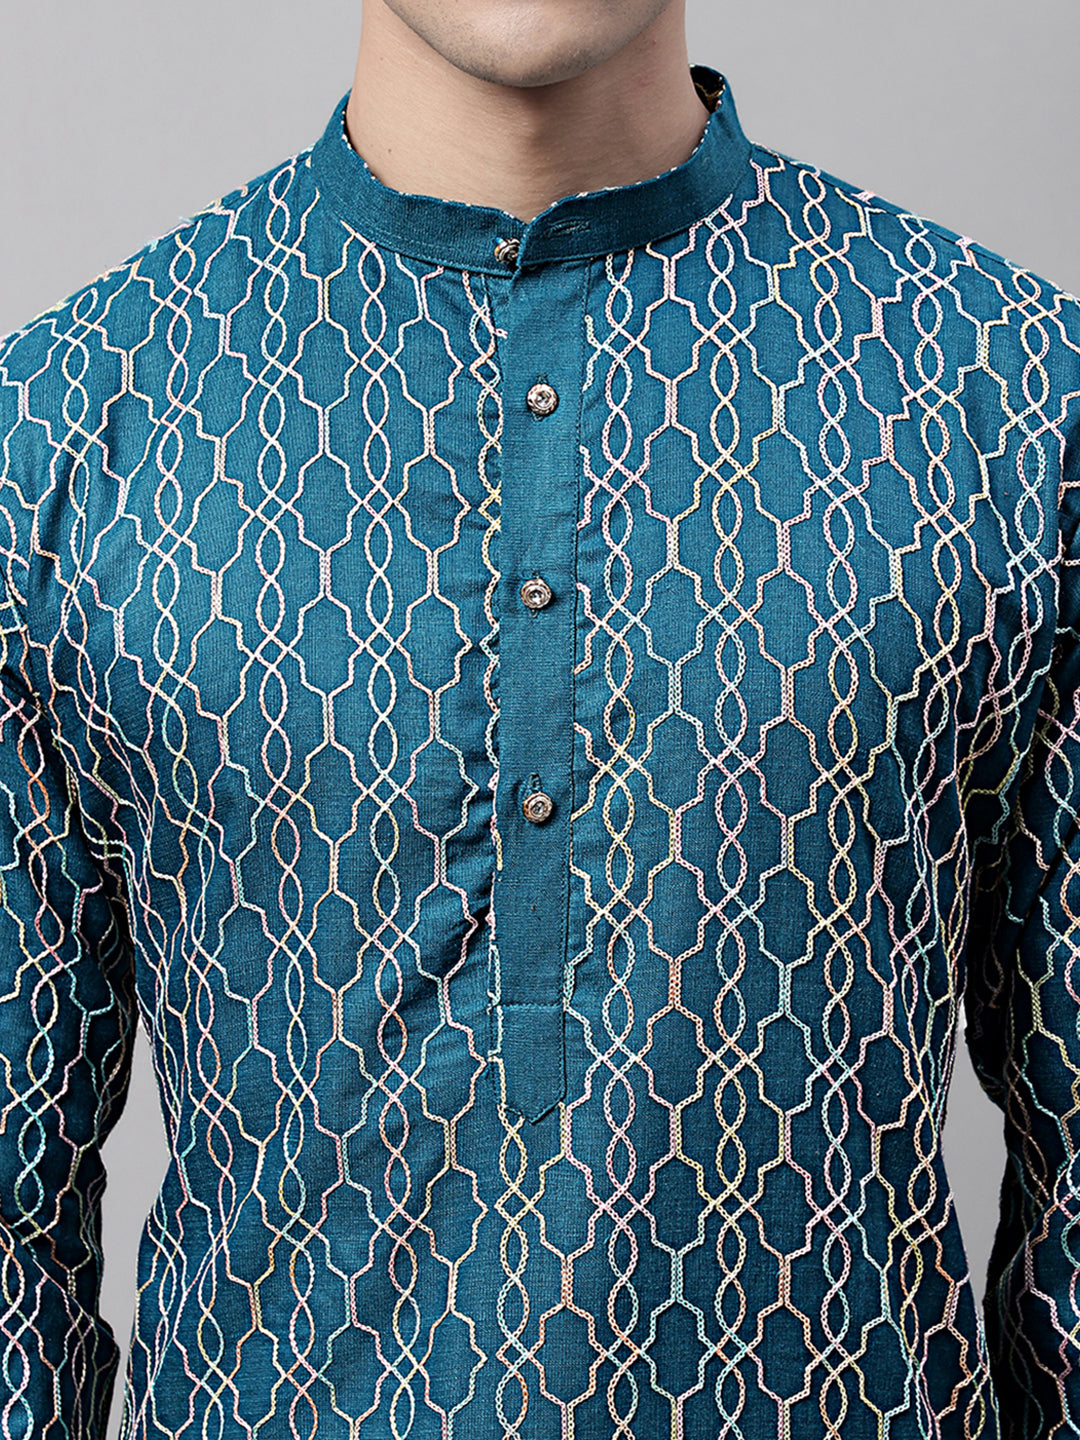 Men's Teal Blue and Multi Coloured Embroidered Straight Kurta Pyjama Set